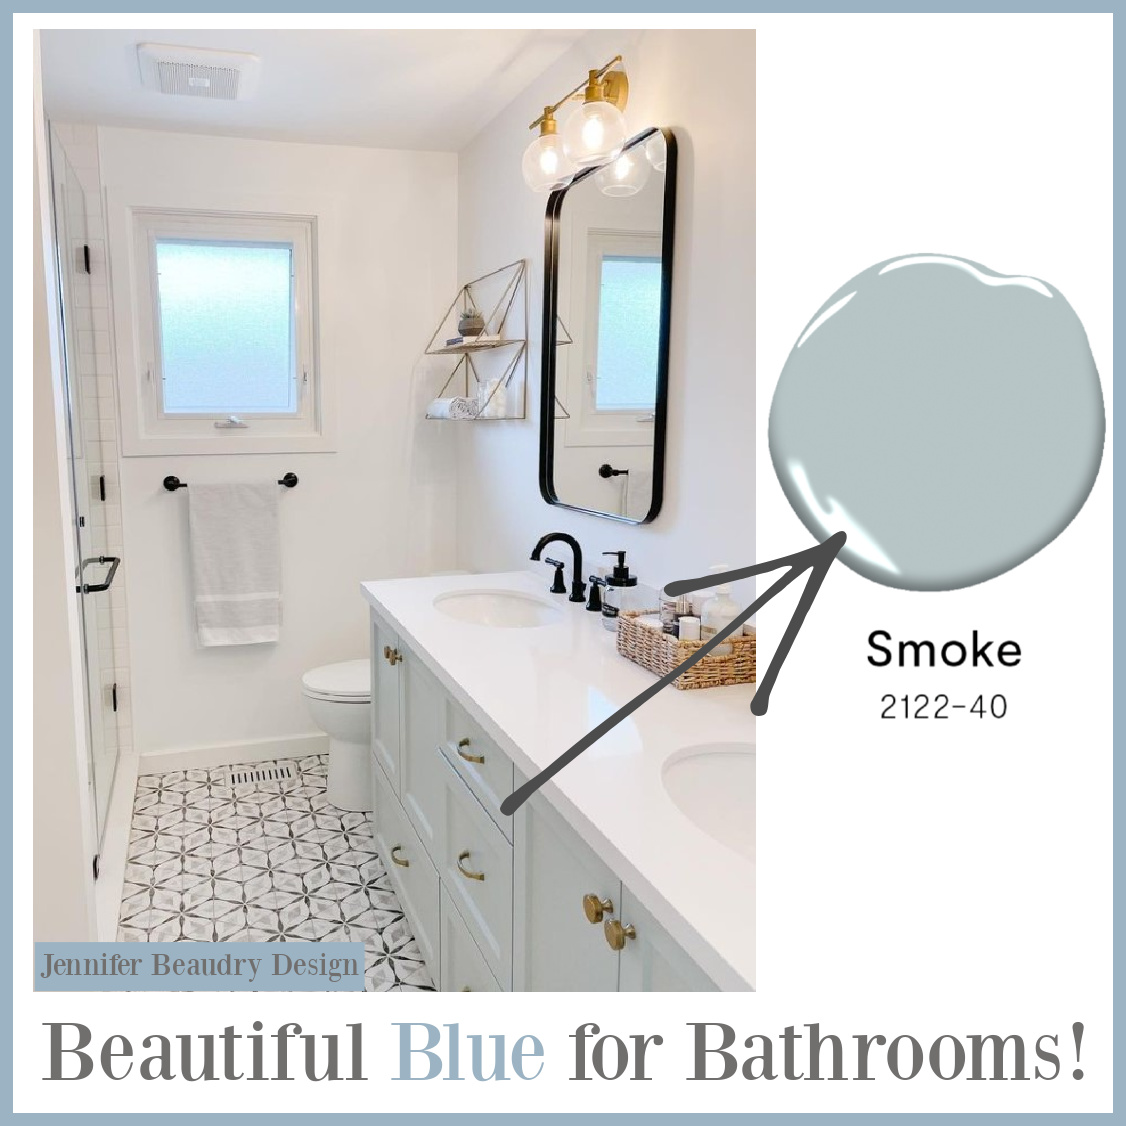 Benjamin Moore Smoke 2122 paint color on a bathroom vanity - Jennifer Beaudry Design. #benjaminmooresmoke #bluepaintcolors